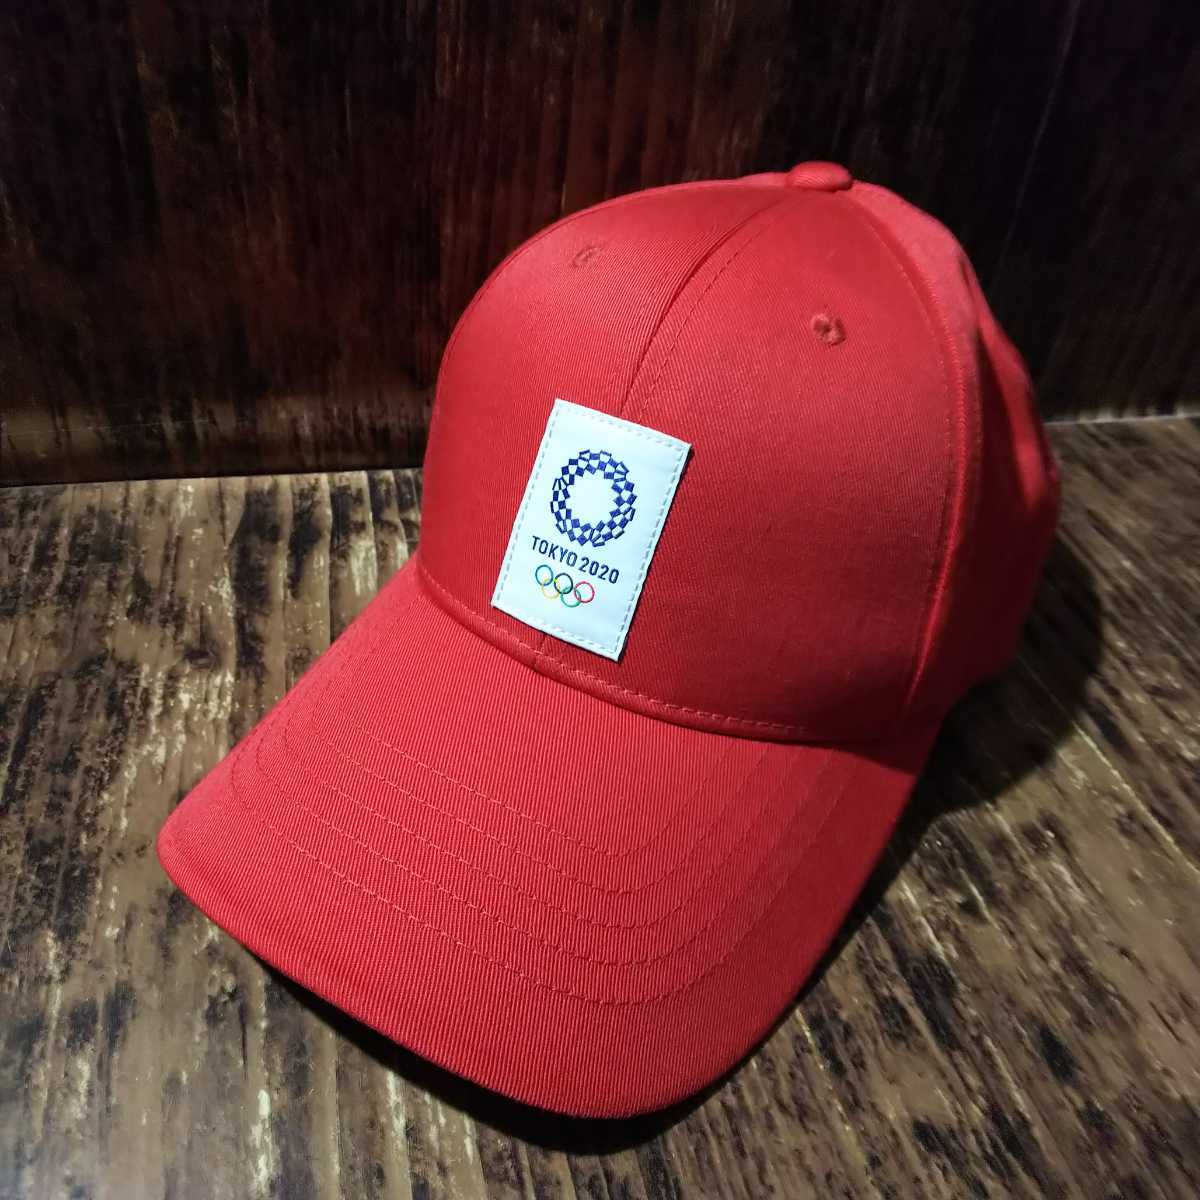 東京2020オリンピック 帽子 - ハット